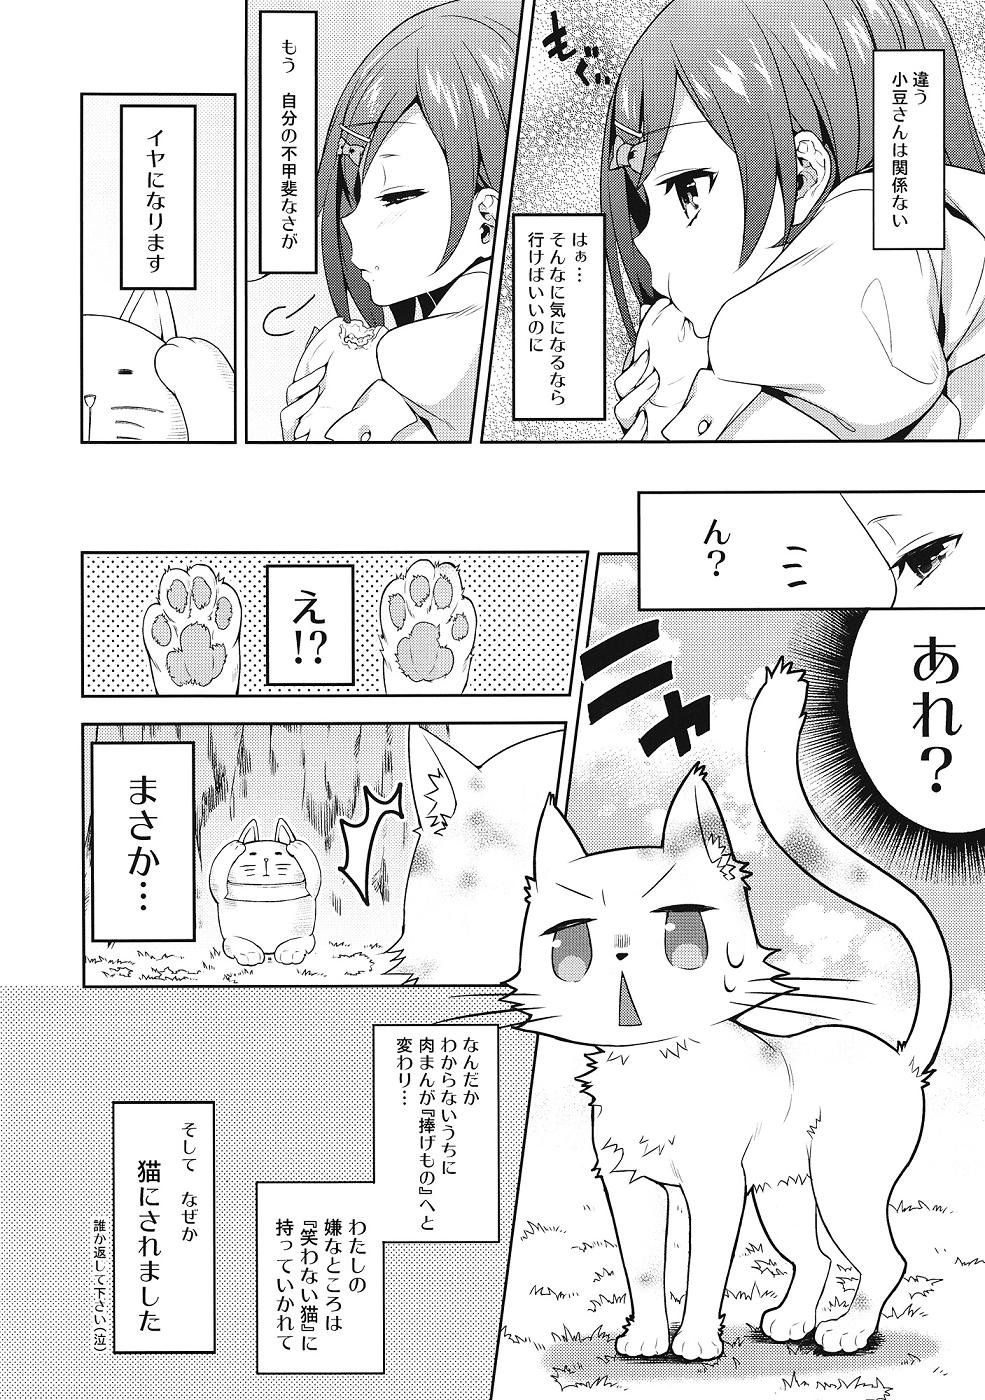 Pounded Hentai Ouji ni Okasareta Neko. - Hentai ouji to warawanai neko Lover - Page 3